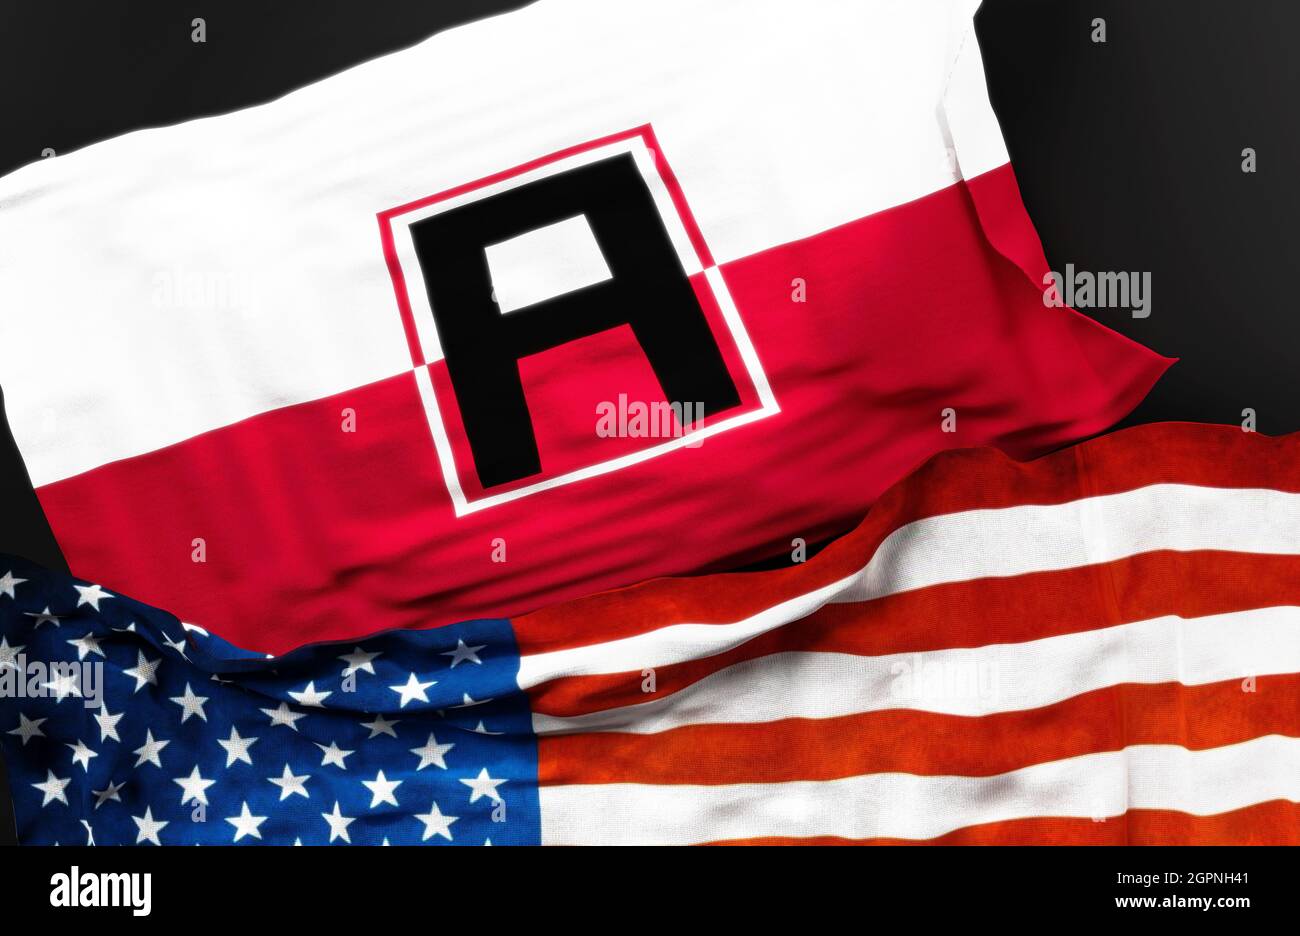 Drapeau de la première armée des États-Unis avec un drapeau des États-Unis d'Amérique comme un symbole d'unité entre eux, illustration 3d Banque D'Images